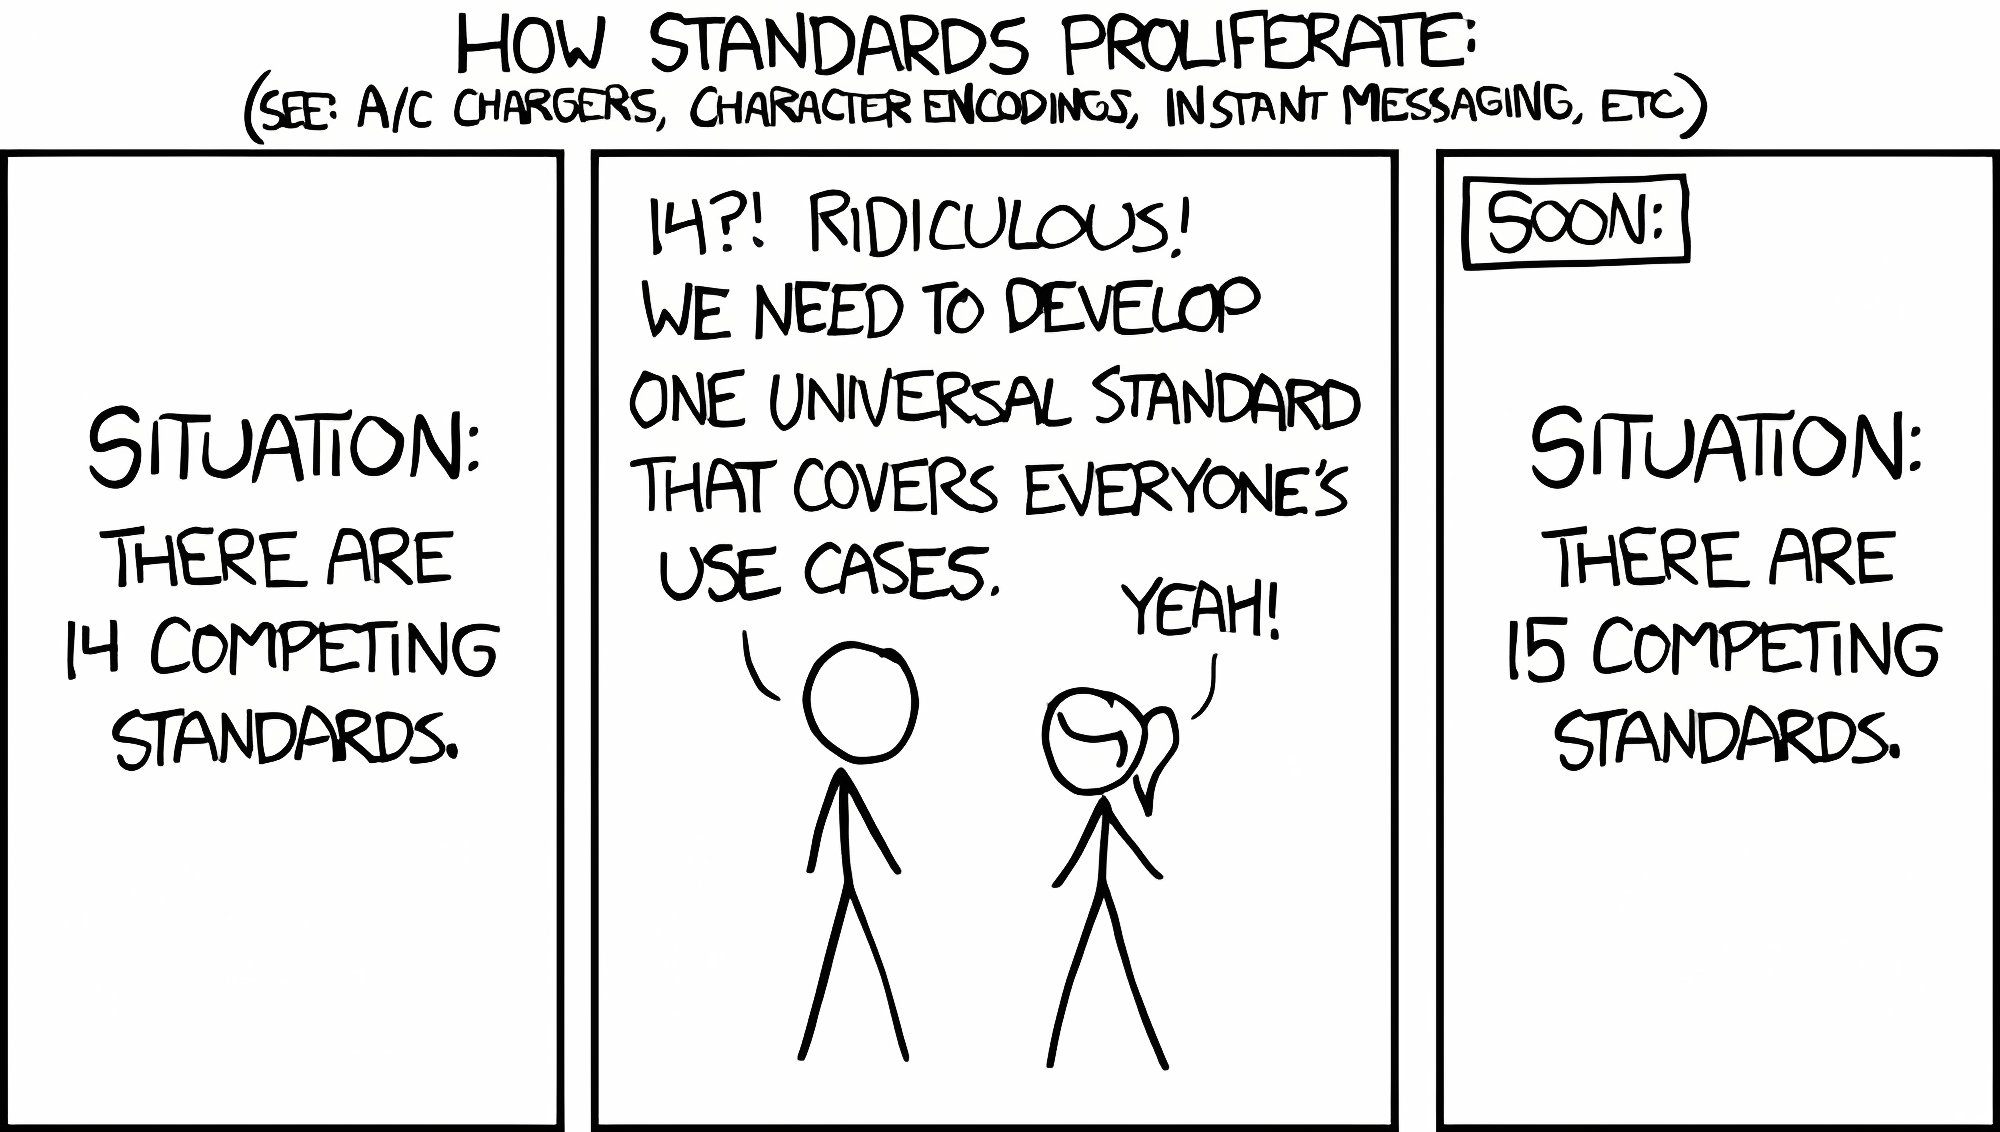 Standards, wir brauchen mehr Standards! (Quelle: xkcd, Lizenz: CC BY-NC 2.5)